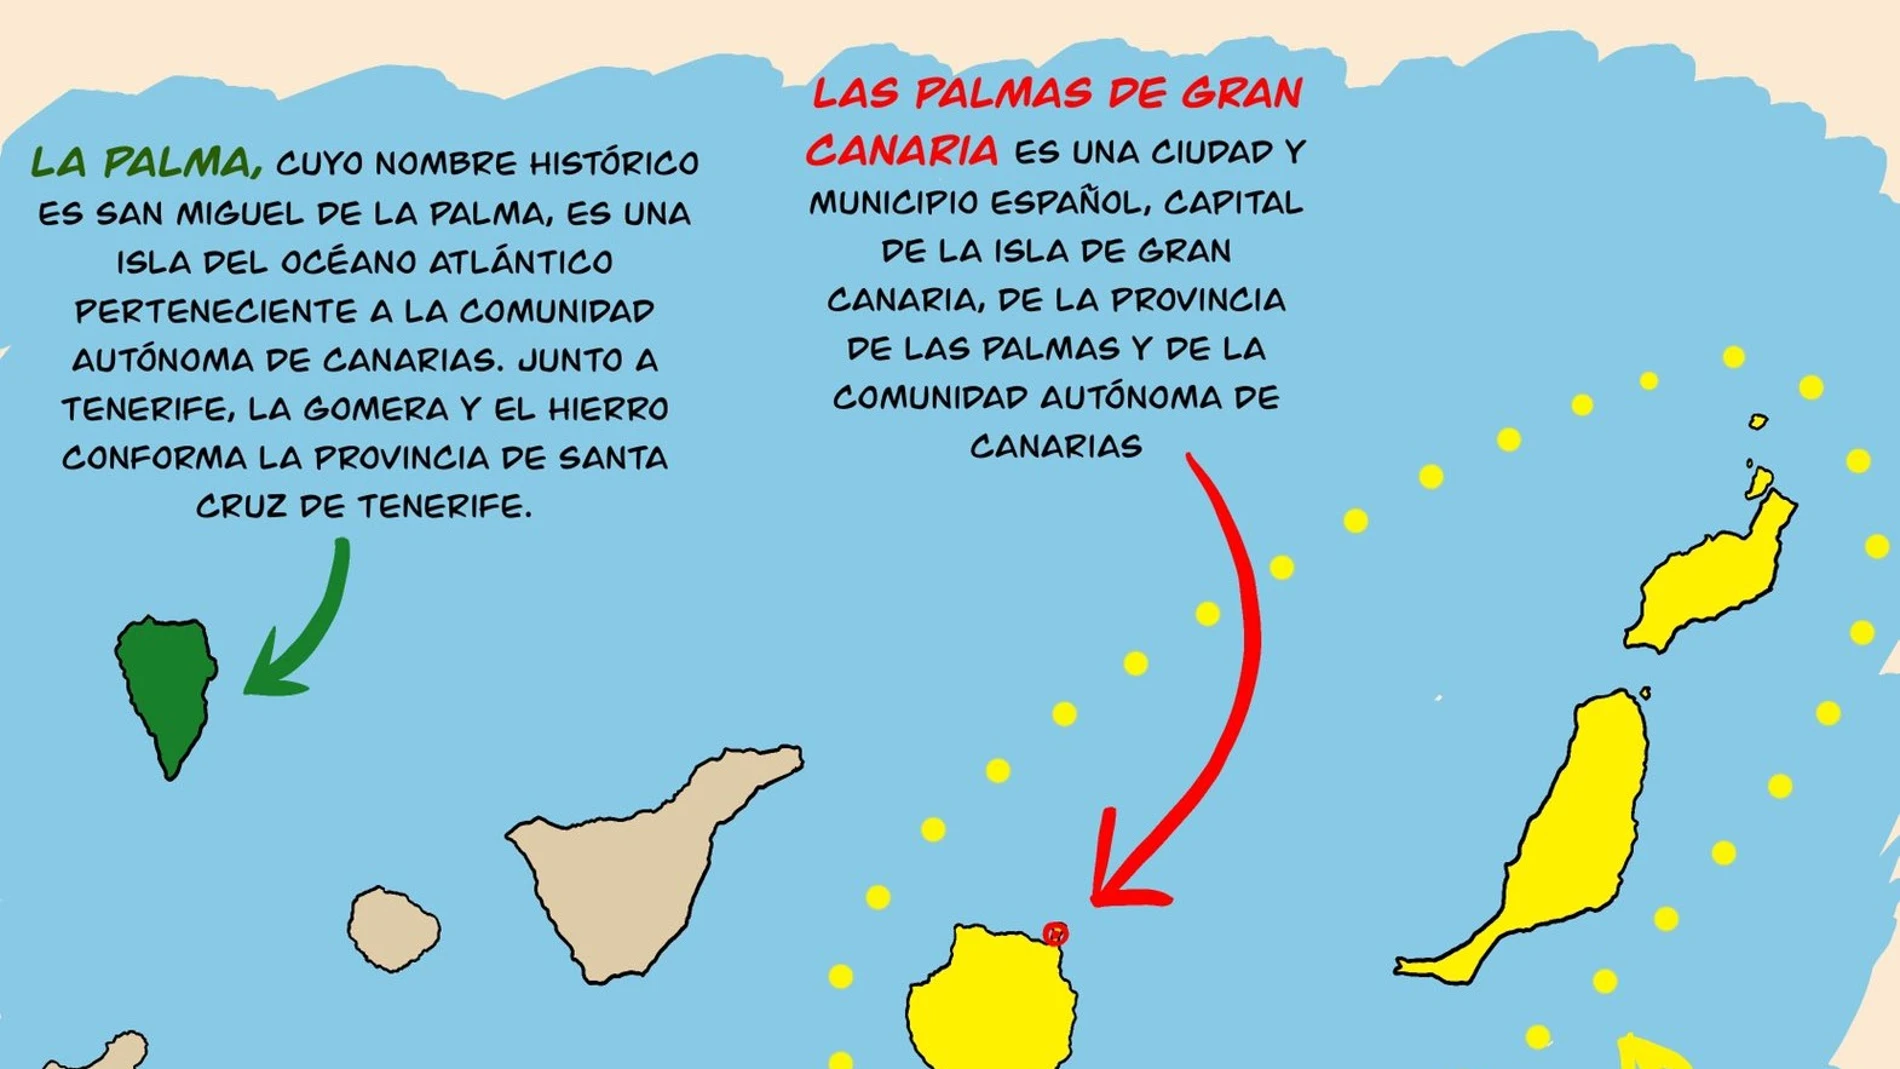 Imagen de Twitter; diferencias entre La Palma, Las Palmas, Palma y Las Palmas de Gran Canaria